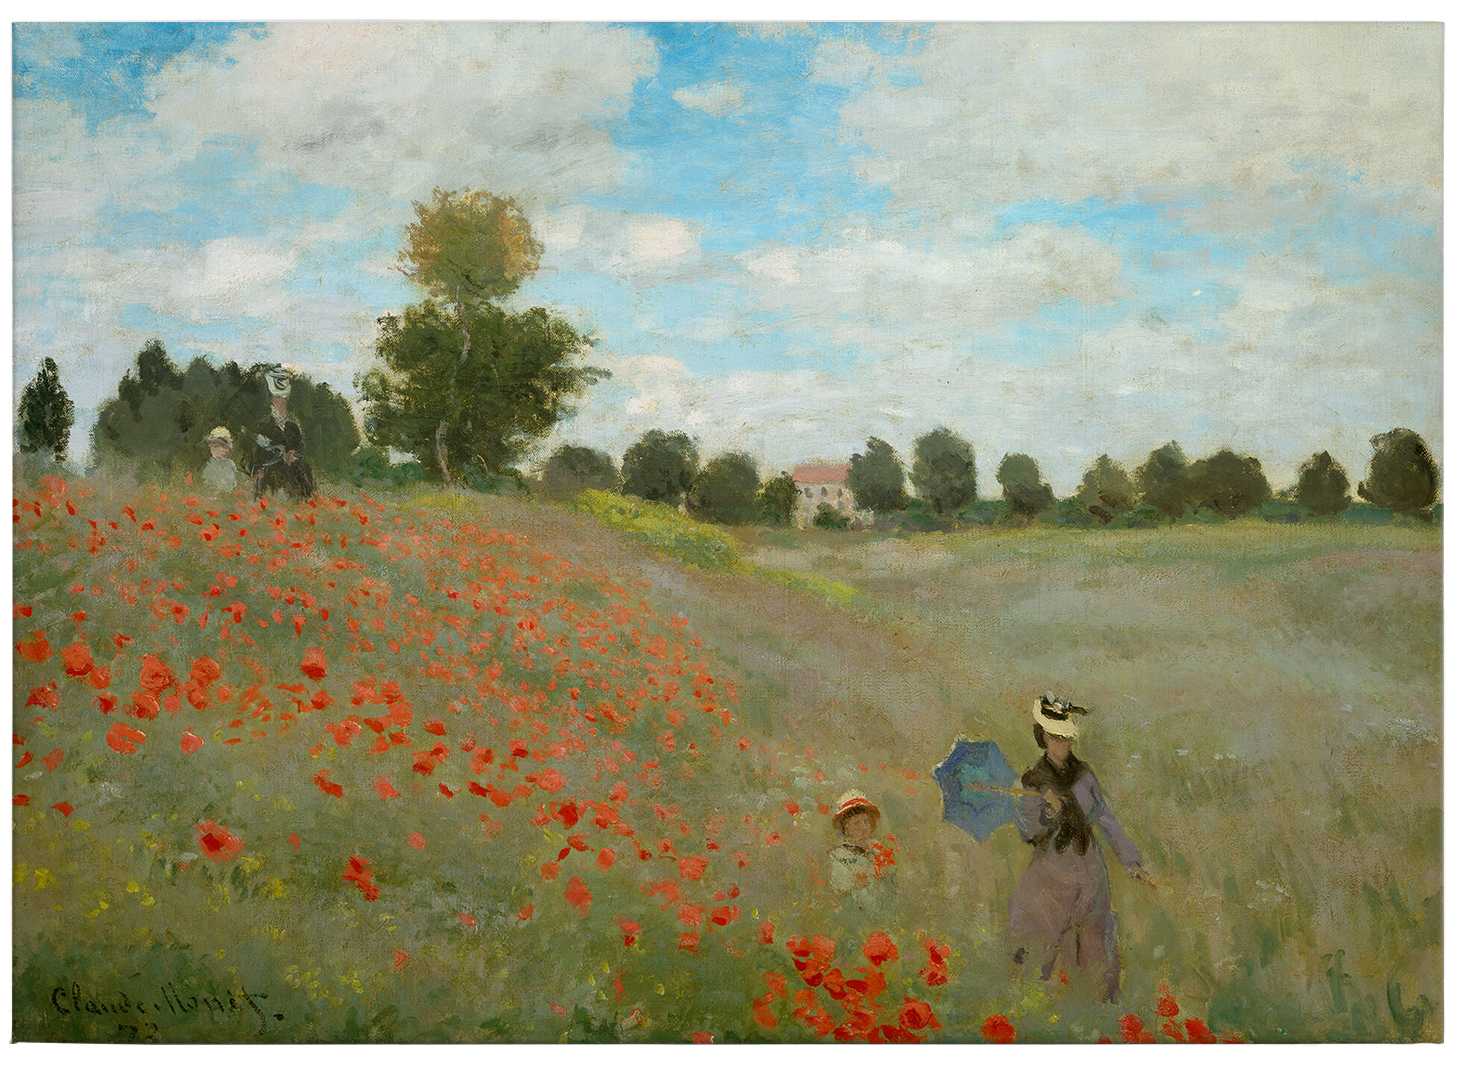             Monet toile "Champ de coquelicots près d'Argenteuil" - 0,70 m x 0,50 m
        